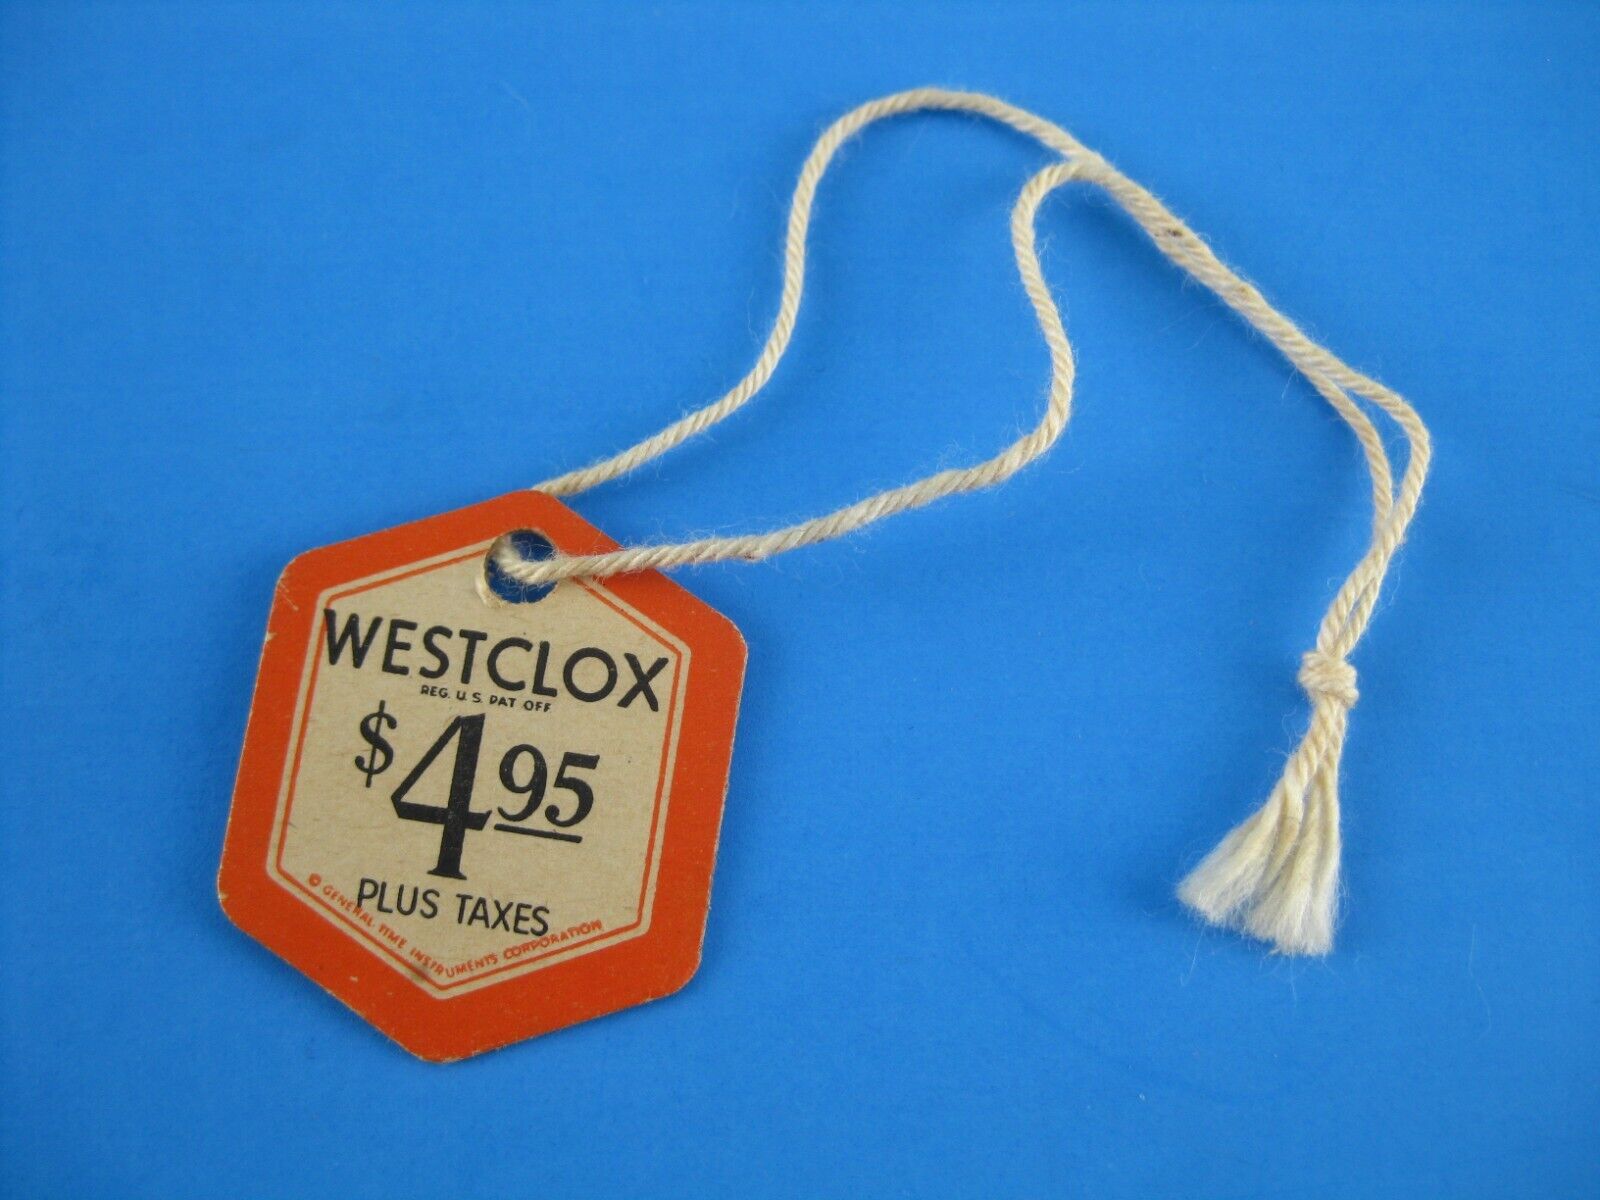 Vintage Westclox Original Big Ben Alarm Clock Price Tag Store Hang Tag $4.95